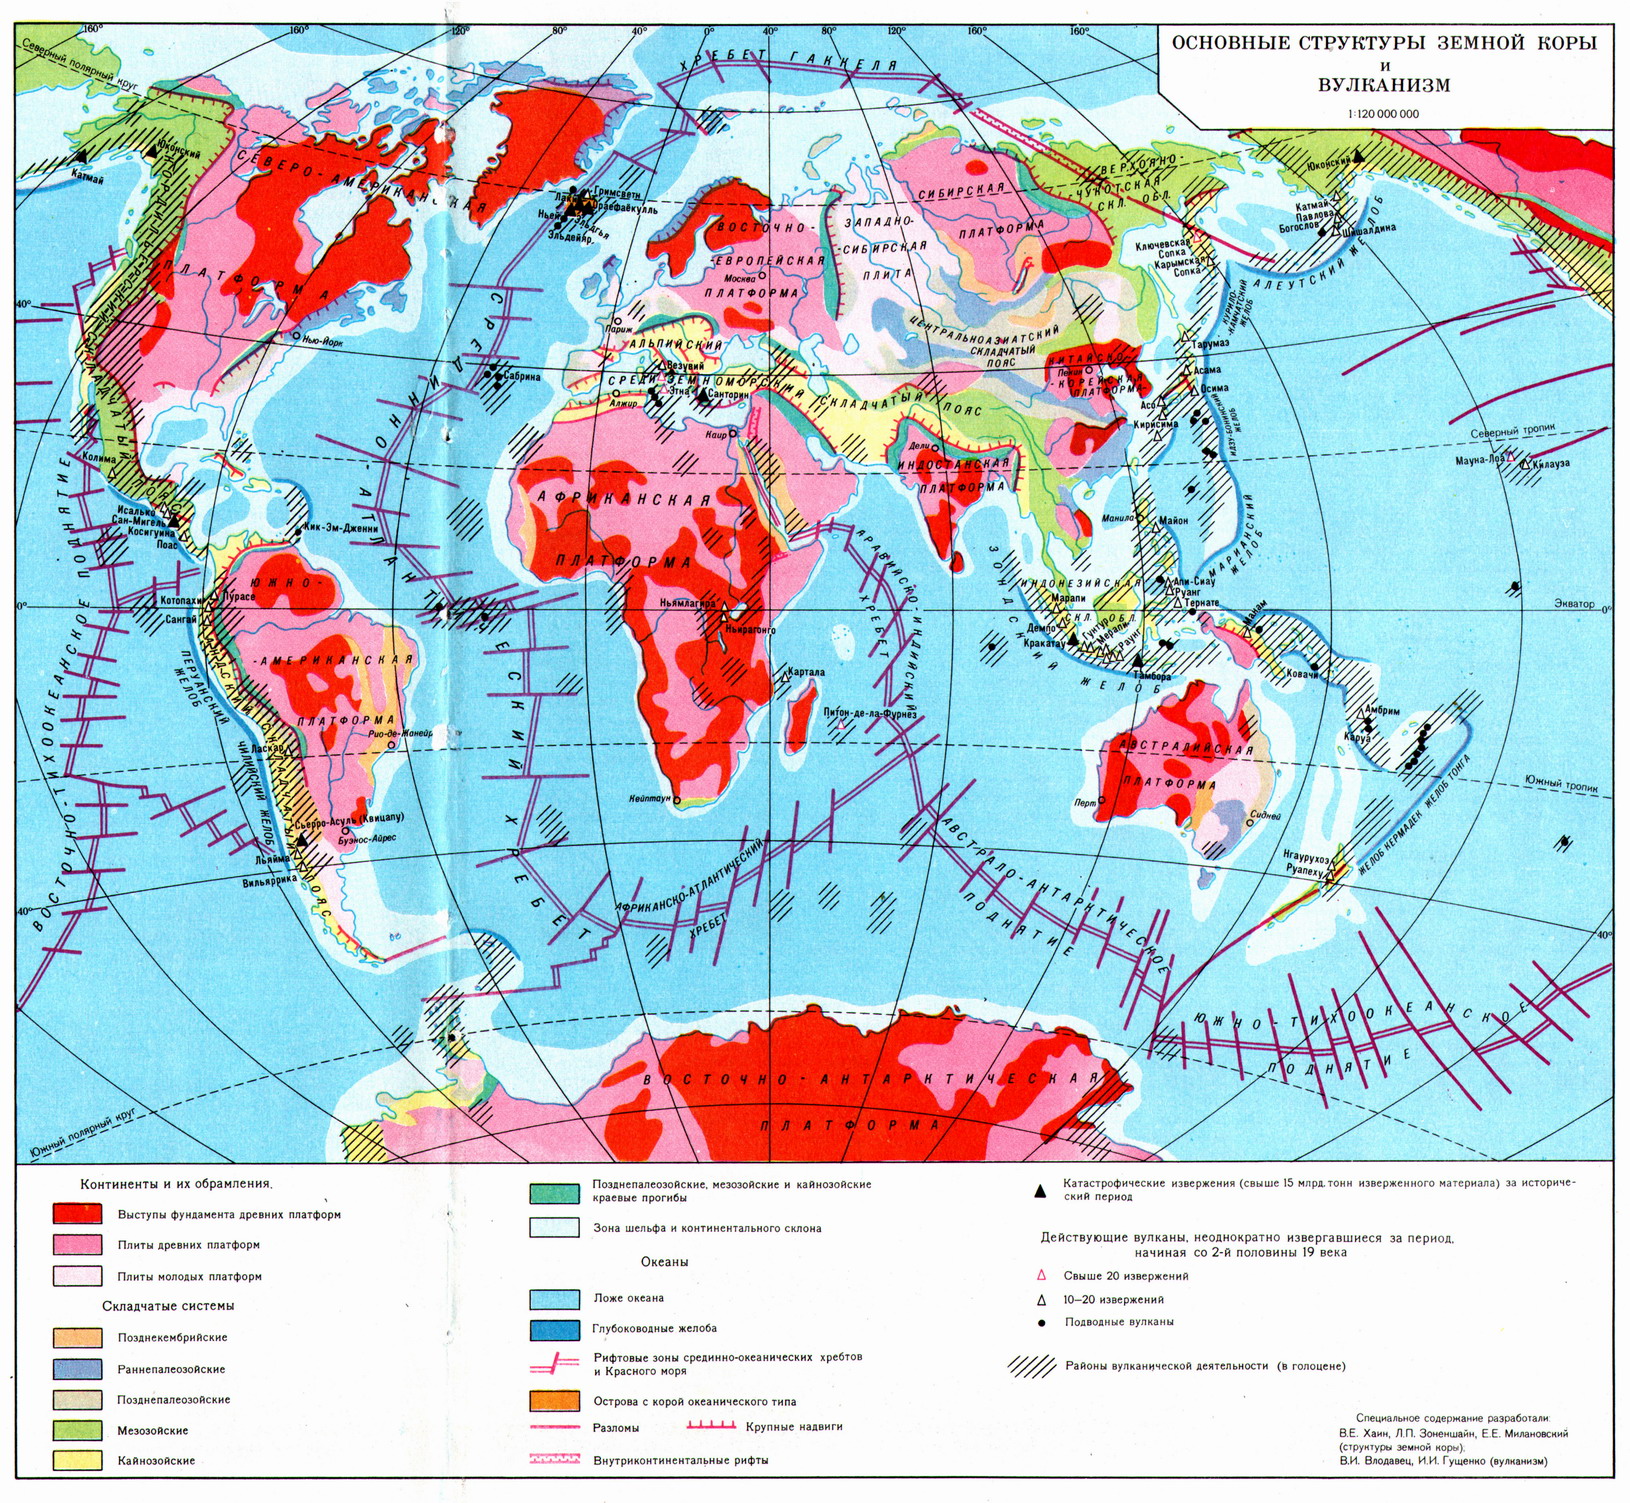 Зоны землетрясений и вулканизма в евразии